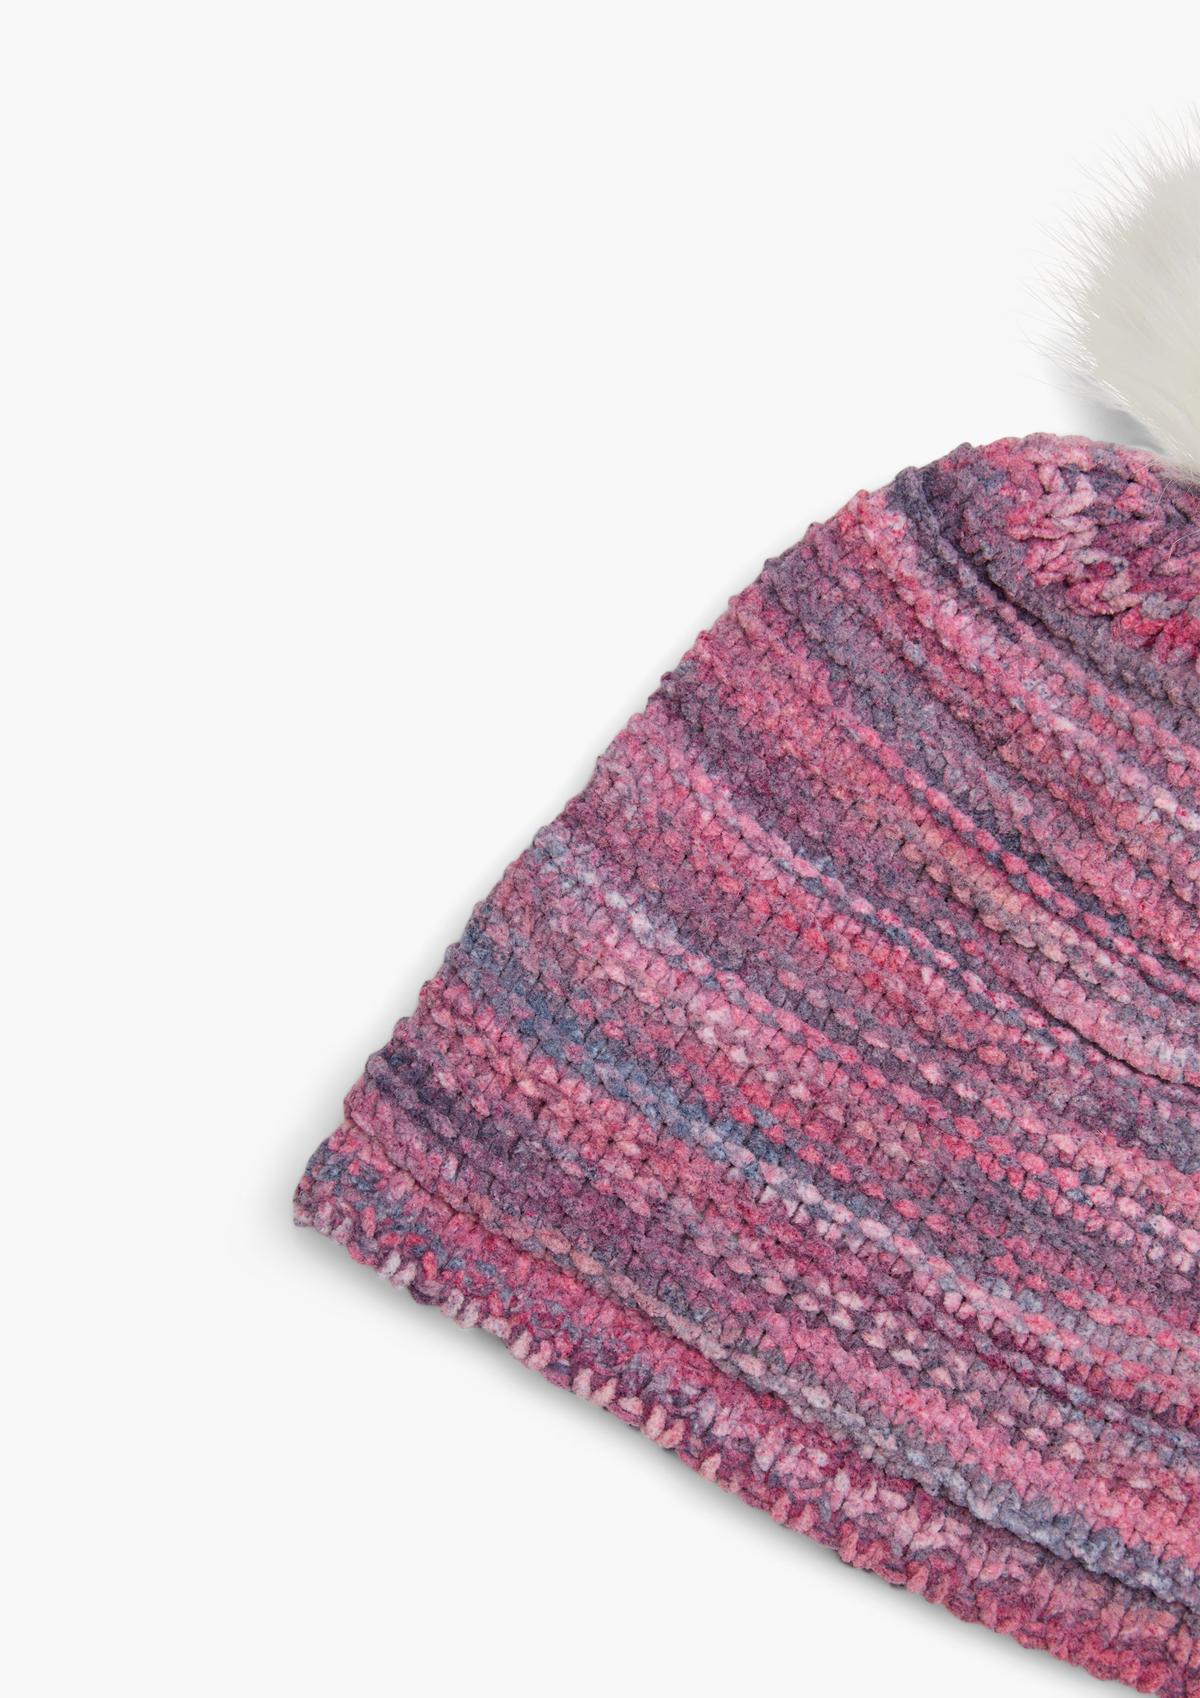 s.Oliver Pompom hat with a knit pattern